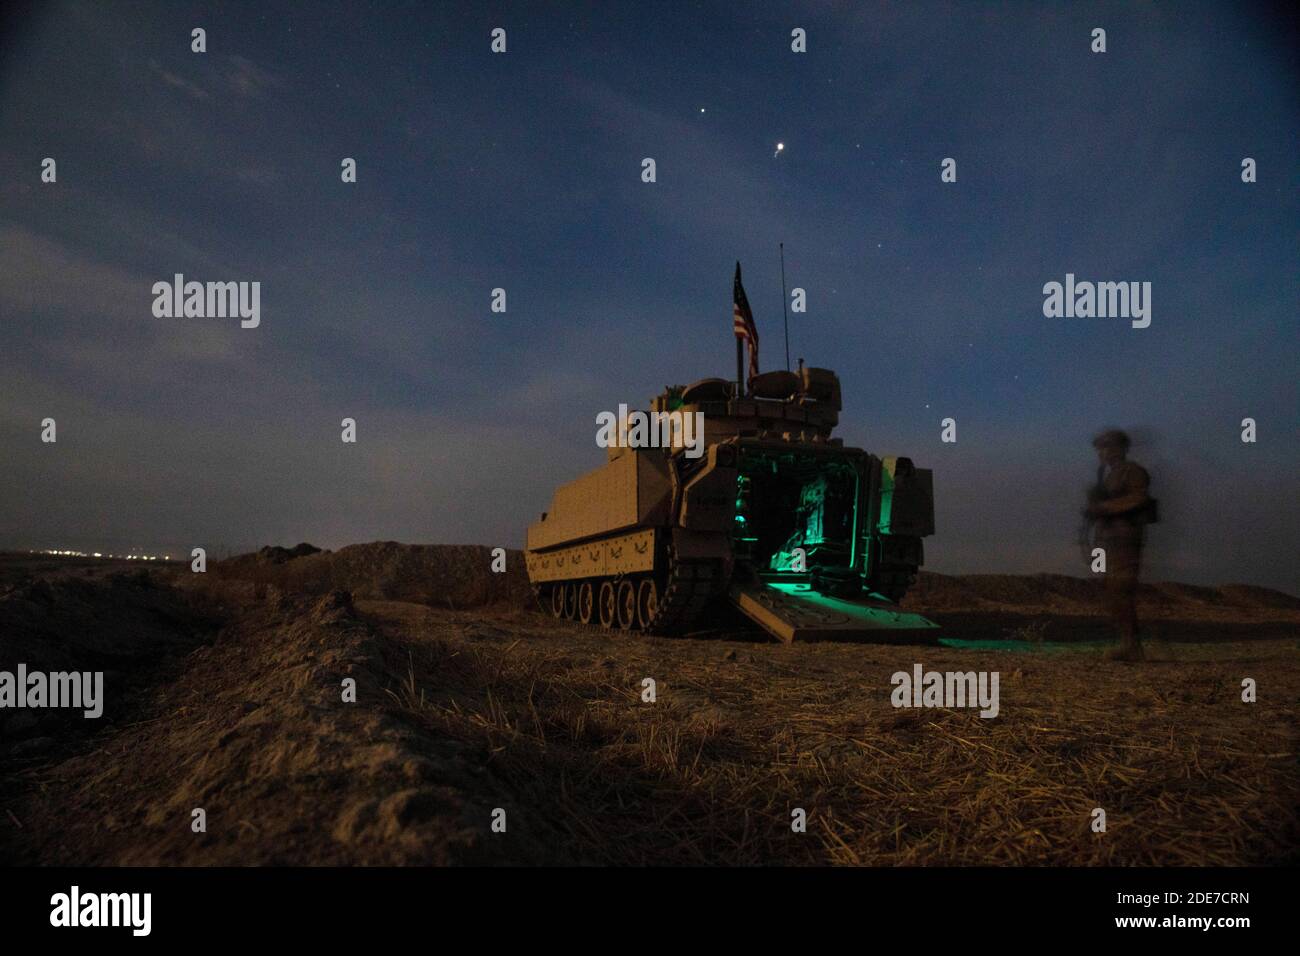 Un soldato statunitense si trova accanto ai veicoli da combattimento della fanteria M2 Bradley durante un checkpoint notturno del 30 ottobre 2020 nella Siria settentrionale. I soldati si trovano in Siria per sostenere l’operazione congiunta della task force per la risoluzione inerente ai combattenti dello Stato islamico. Foto Stock